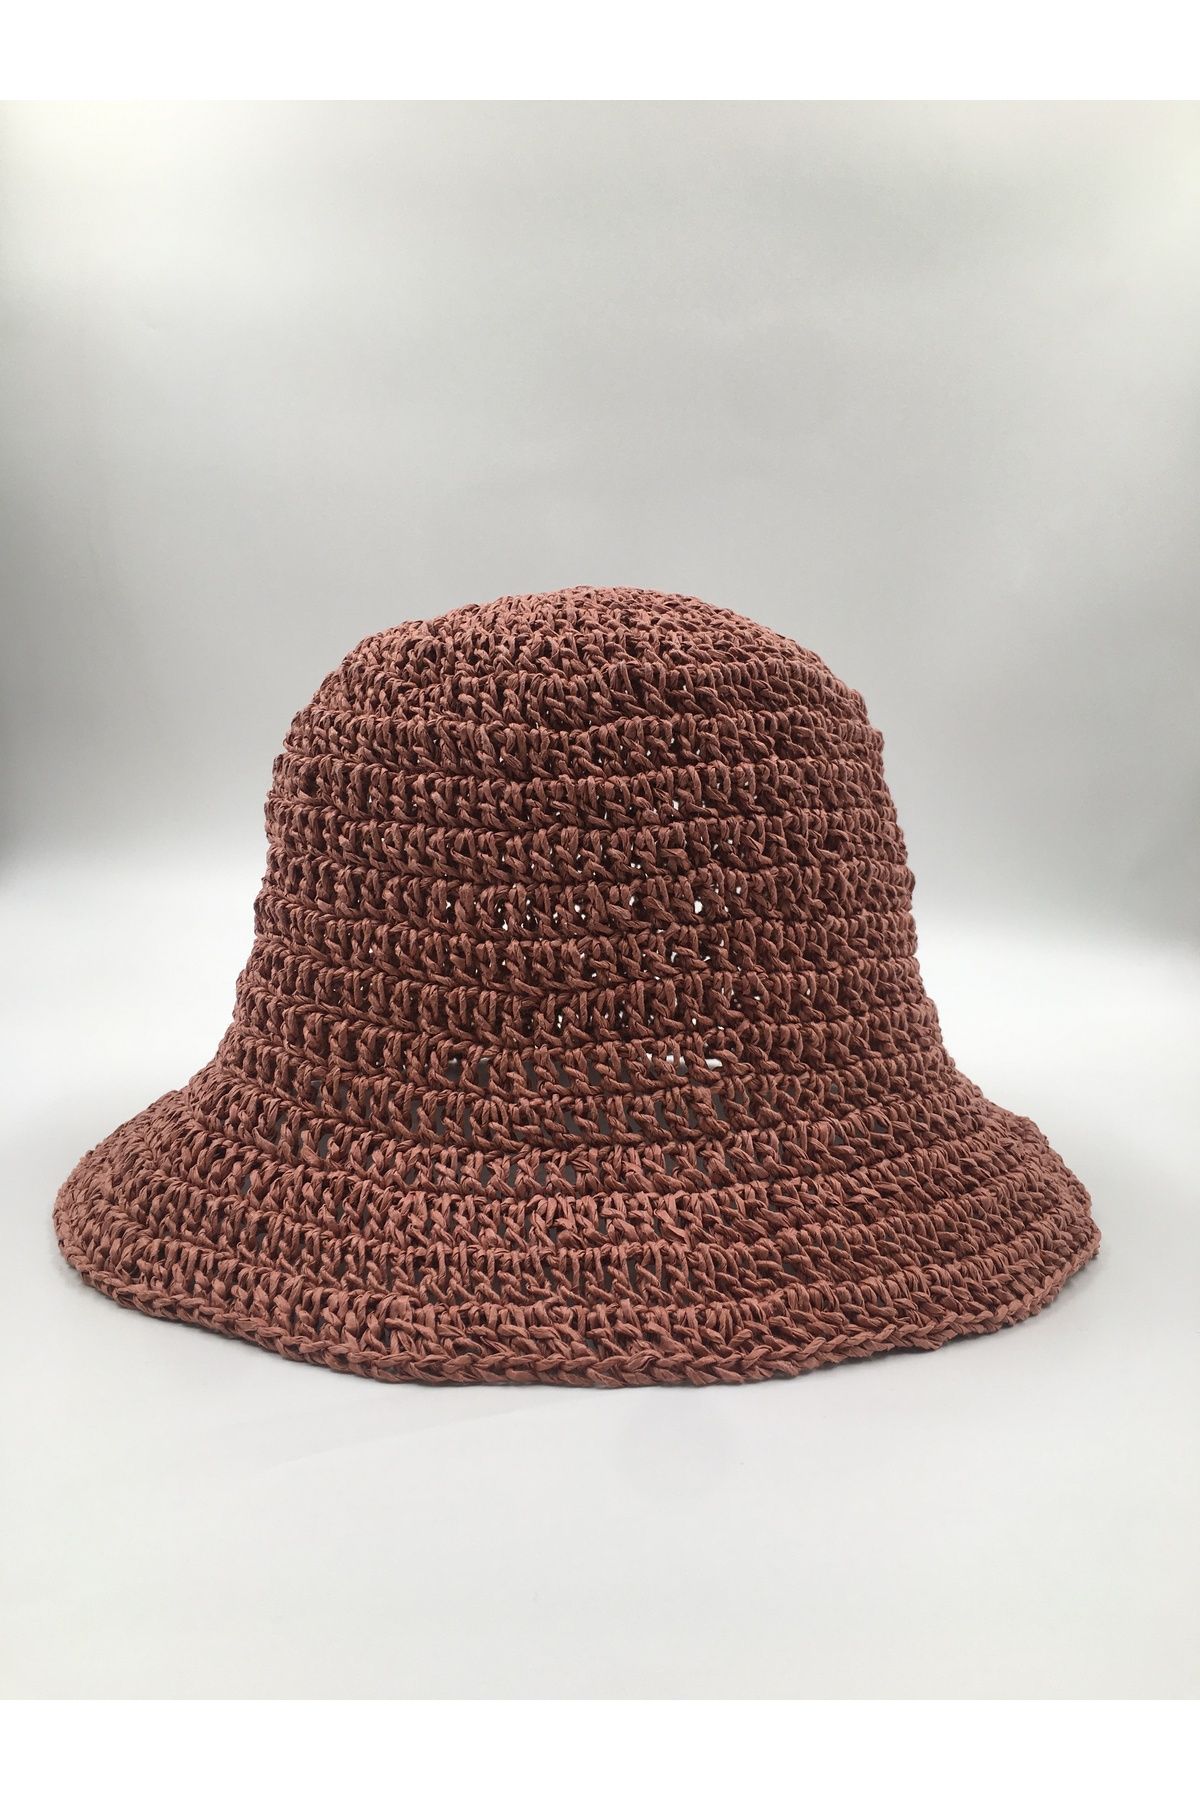 SİYAHMANİFESTOART El Yapımı Hasır Örme Bucket Şapka